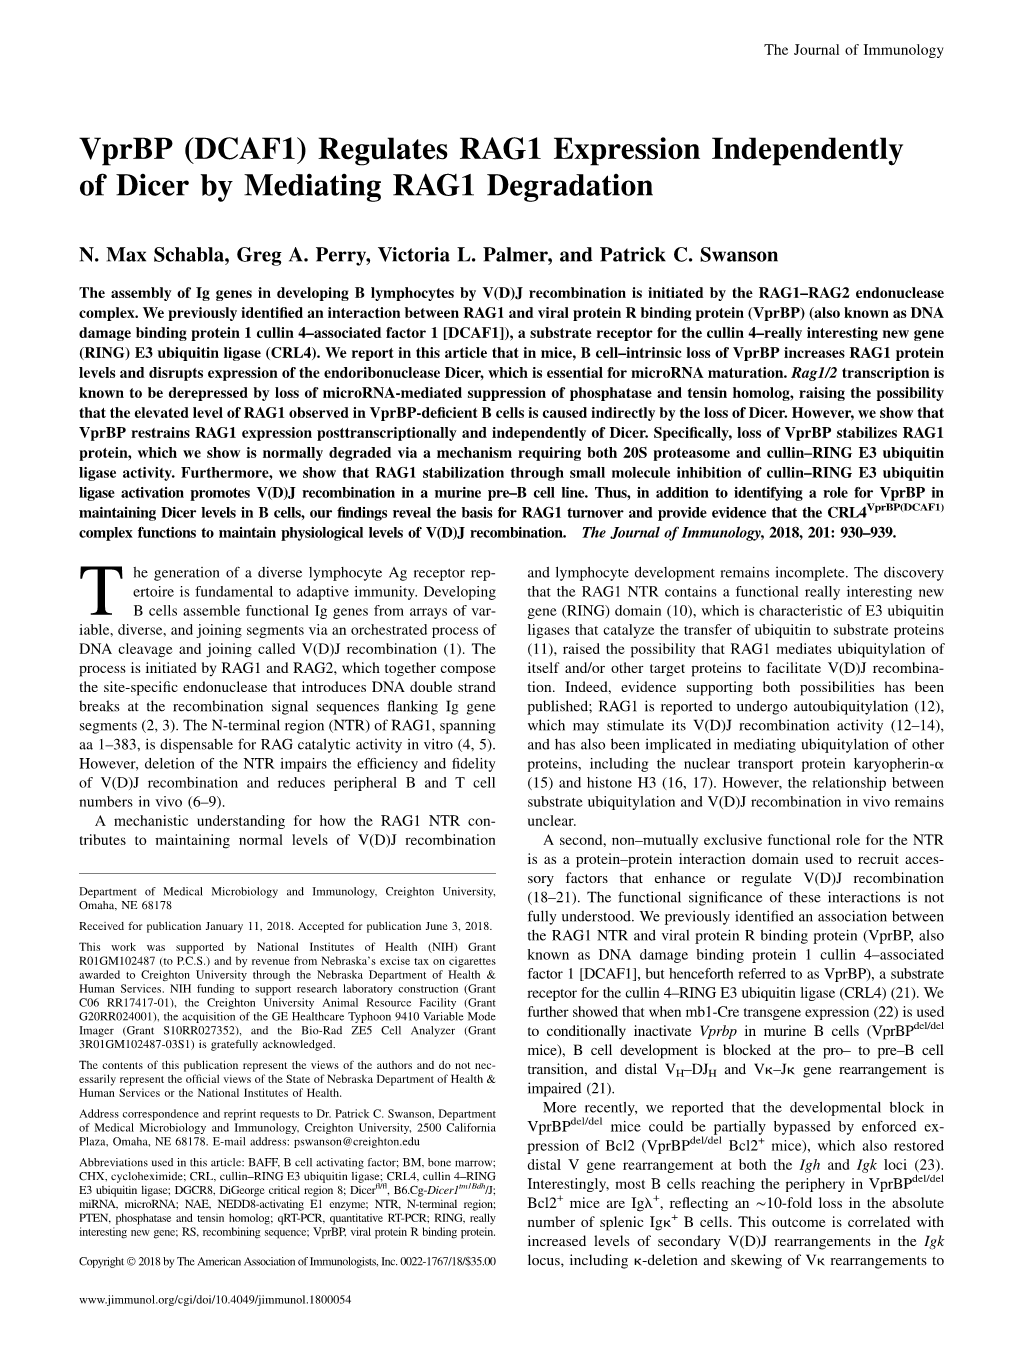 Vprbp (DCAF1) Regulates RAG1 Expression Independently of Dicer by Mediating RAG1 Degradation